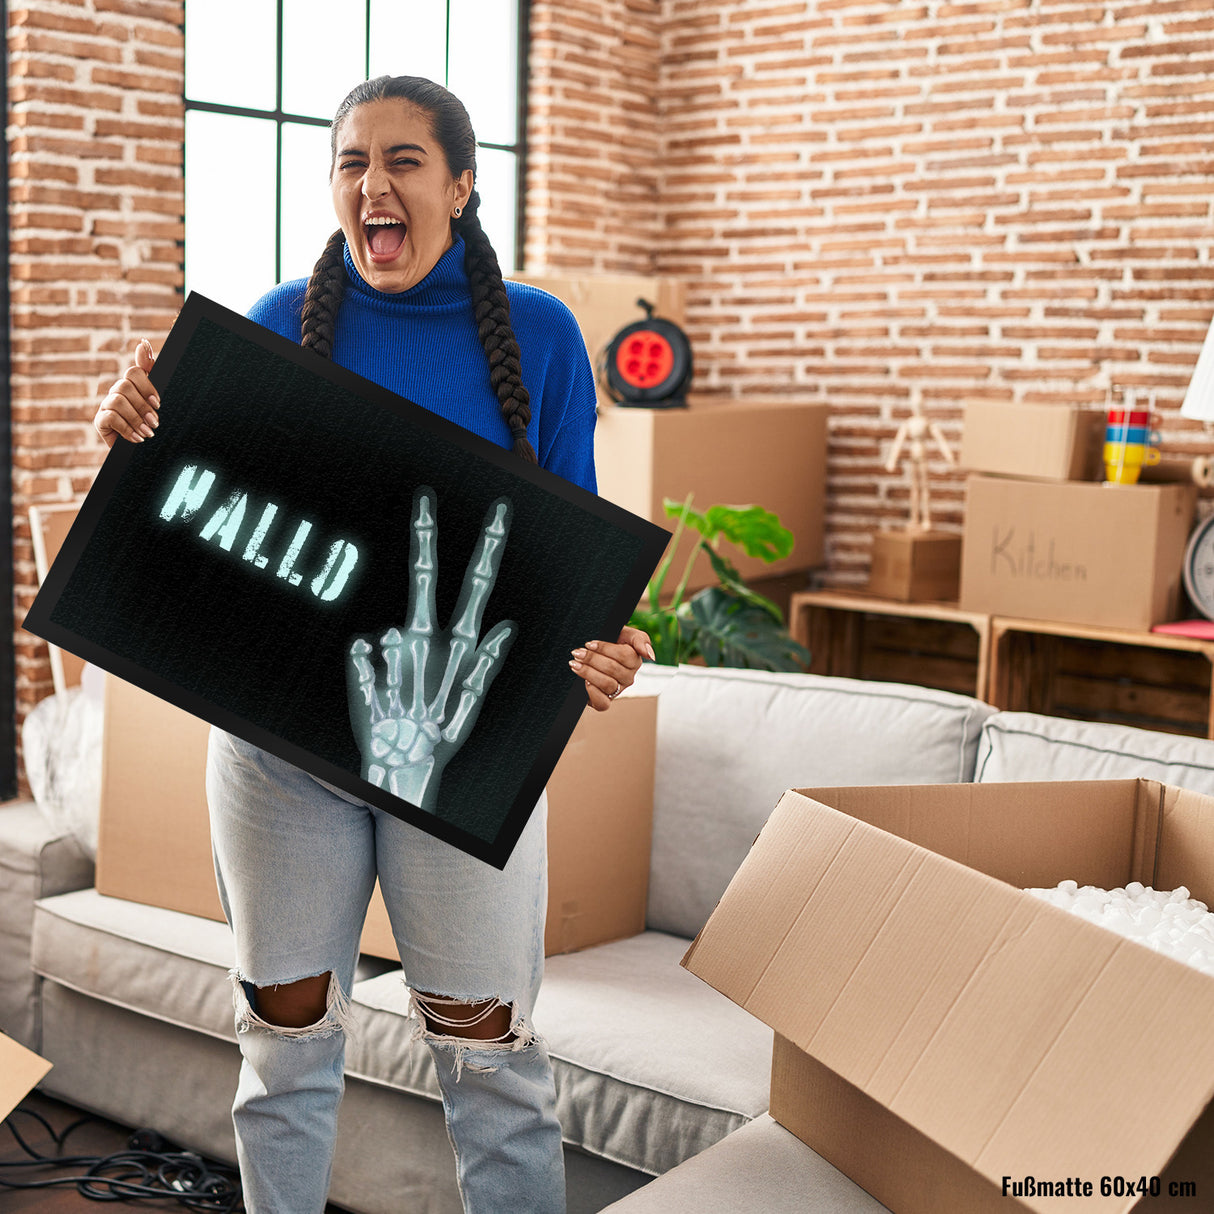 Hallo Fußmatte mit Röntgenbild von Hand mit Peacezeichen